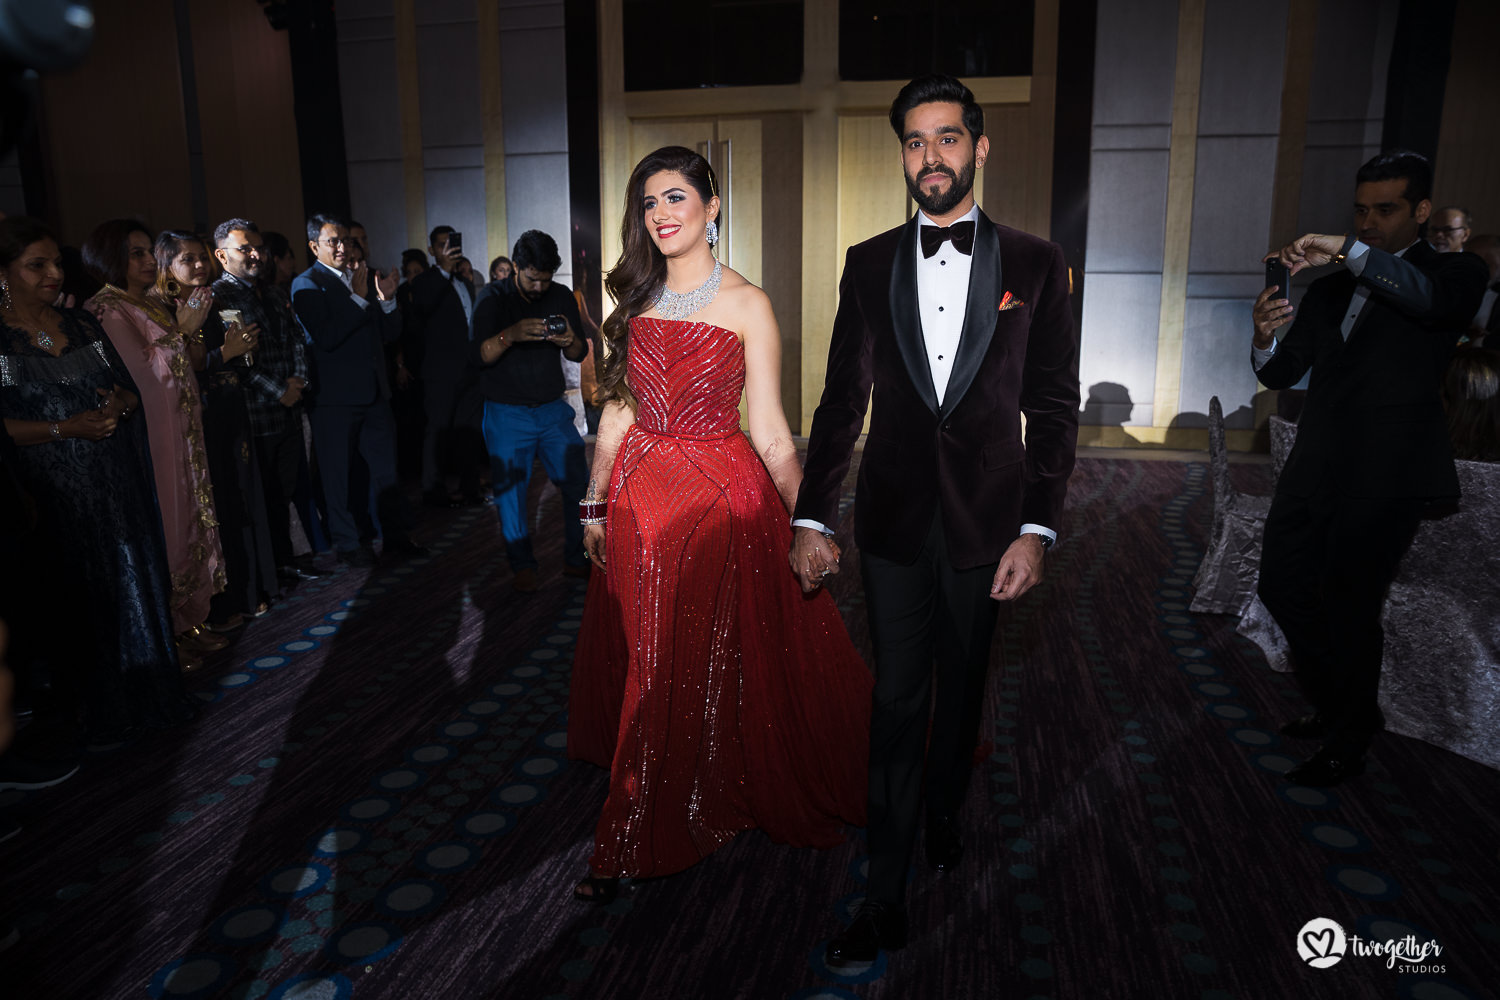 Indian couple enter their reception at Bangkok destination wedding.